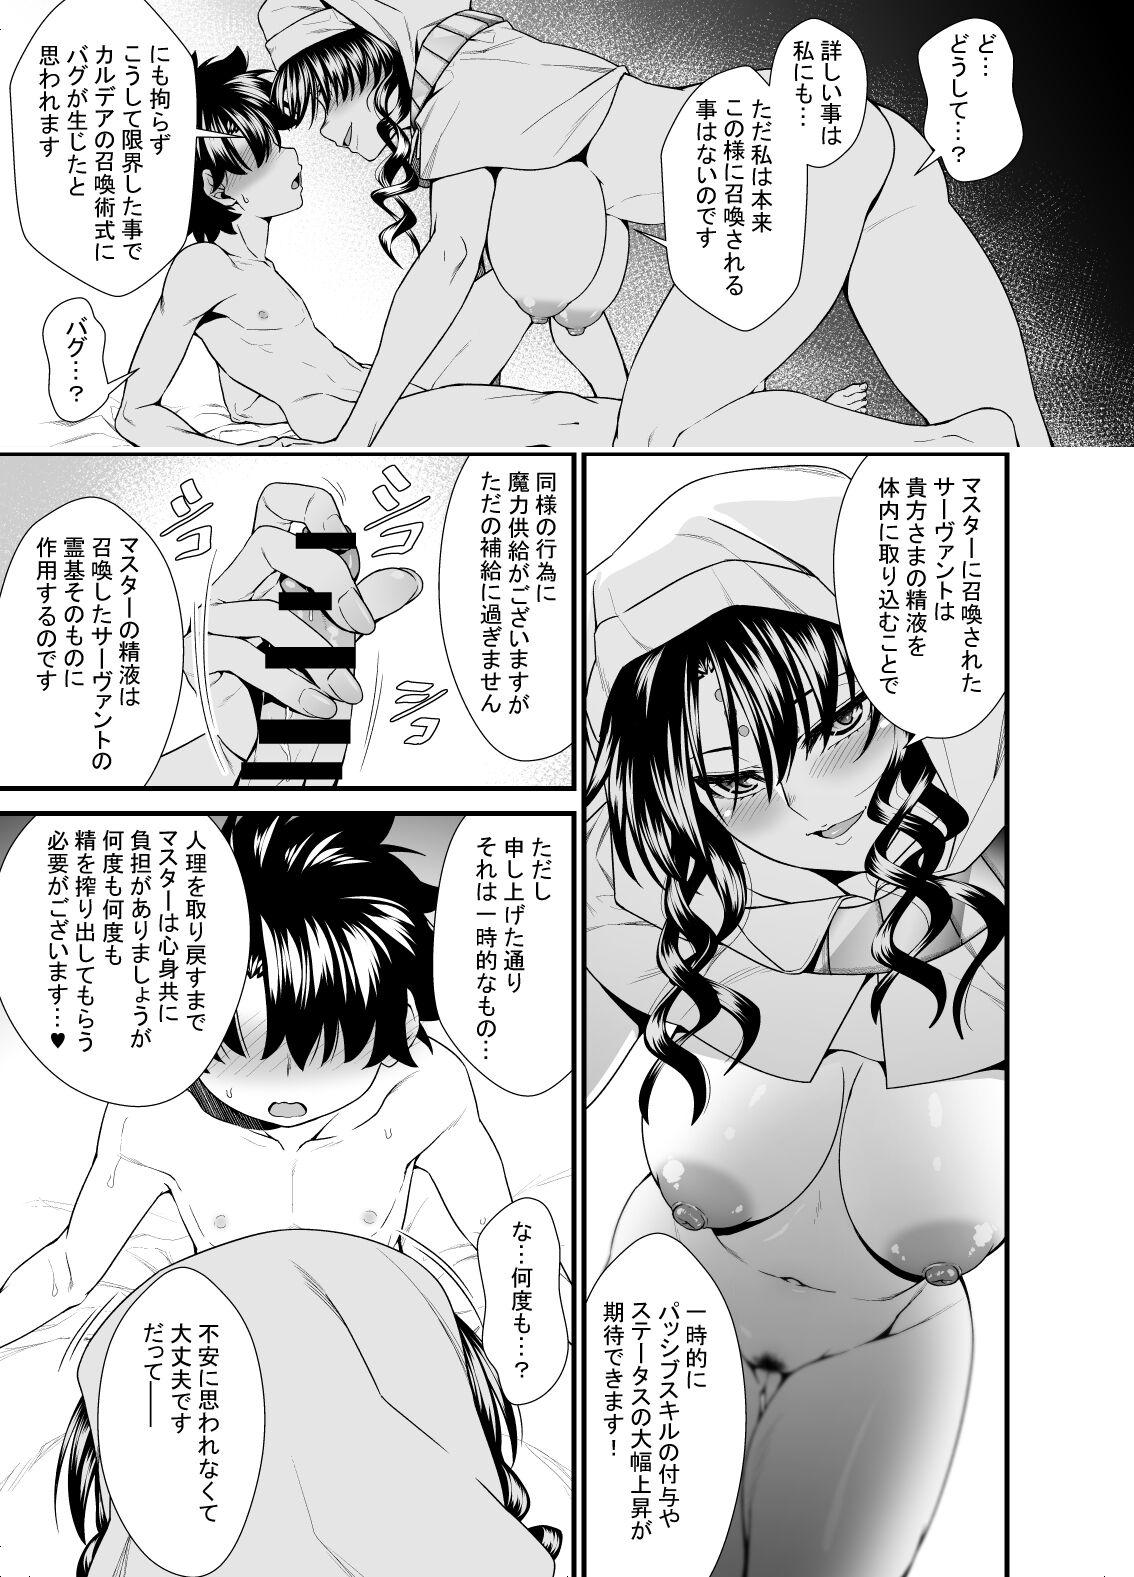 OneShota Manga #01b 4